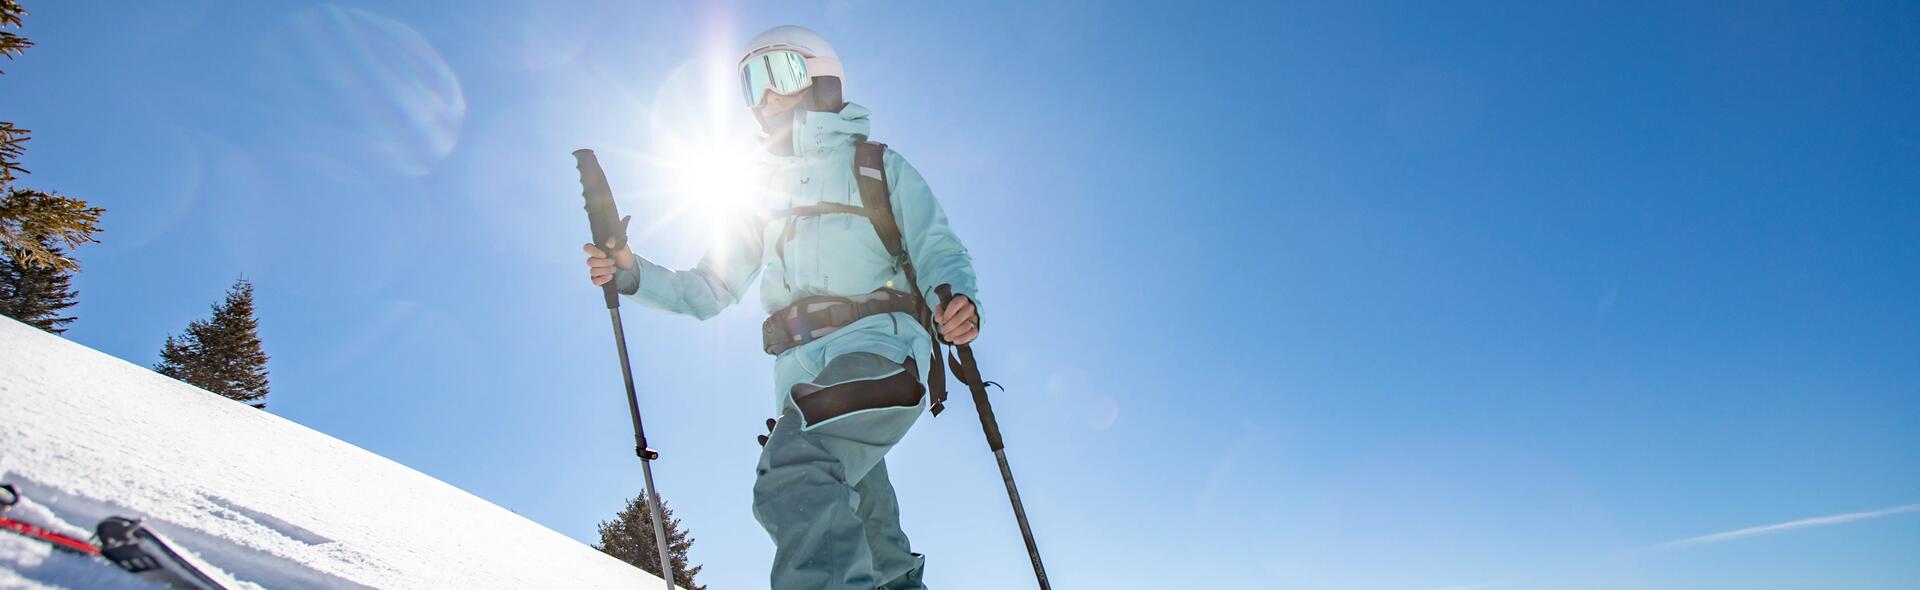 osoba w odzieży narciarskiej trzymająca kijki narciarskie na stoku